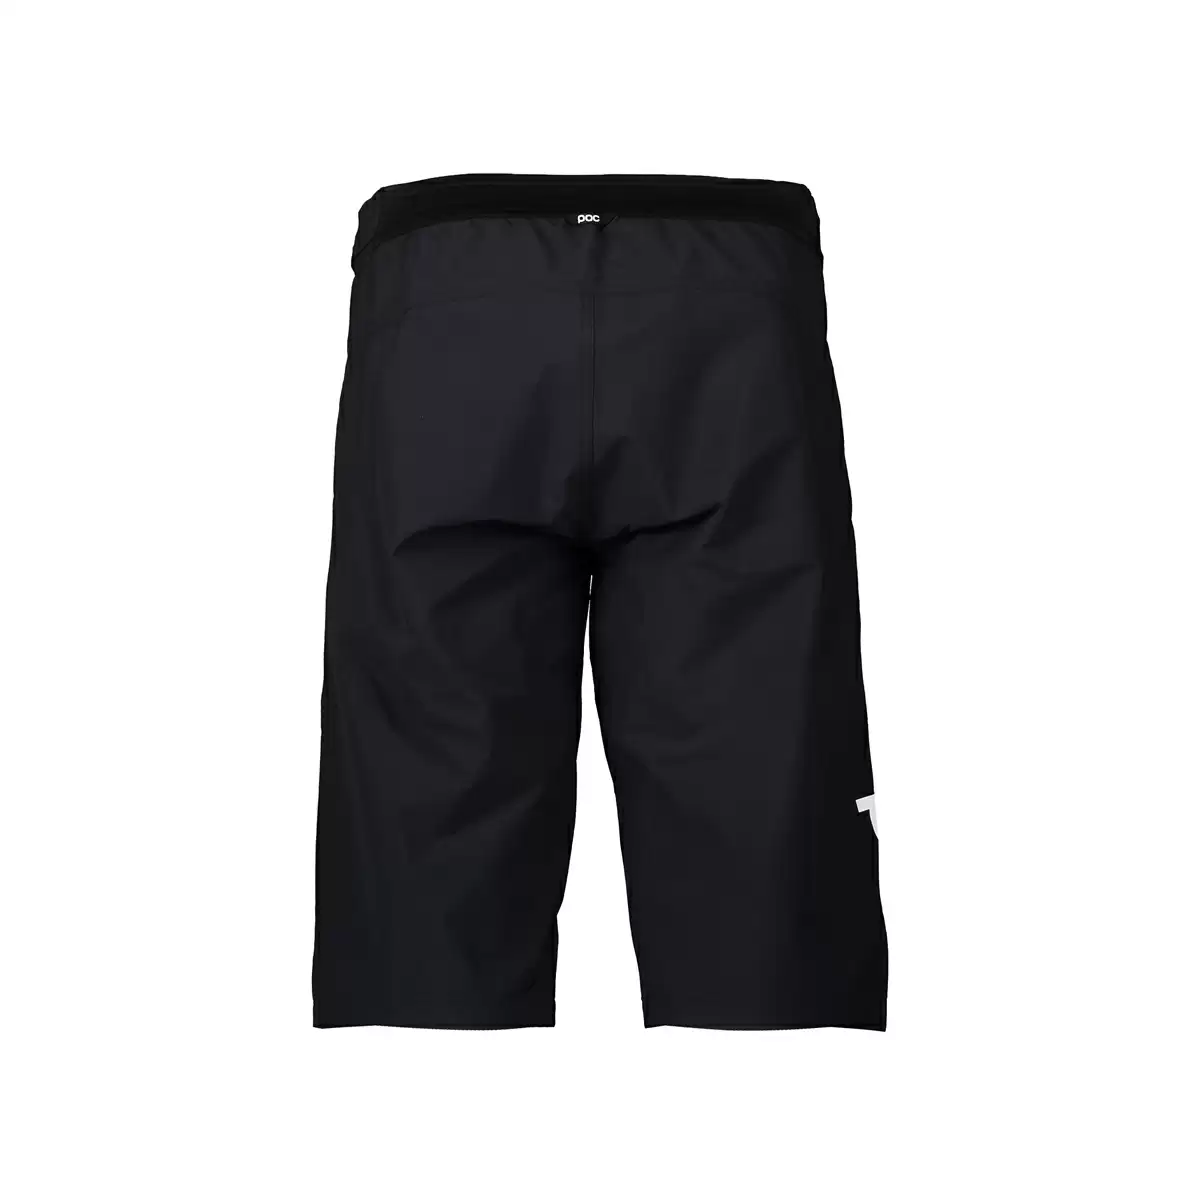 Pantaloni corti essential enduro shorts nero taglia XS #1